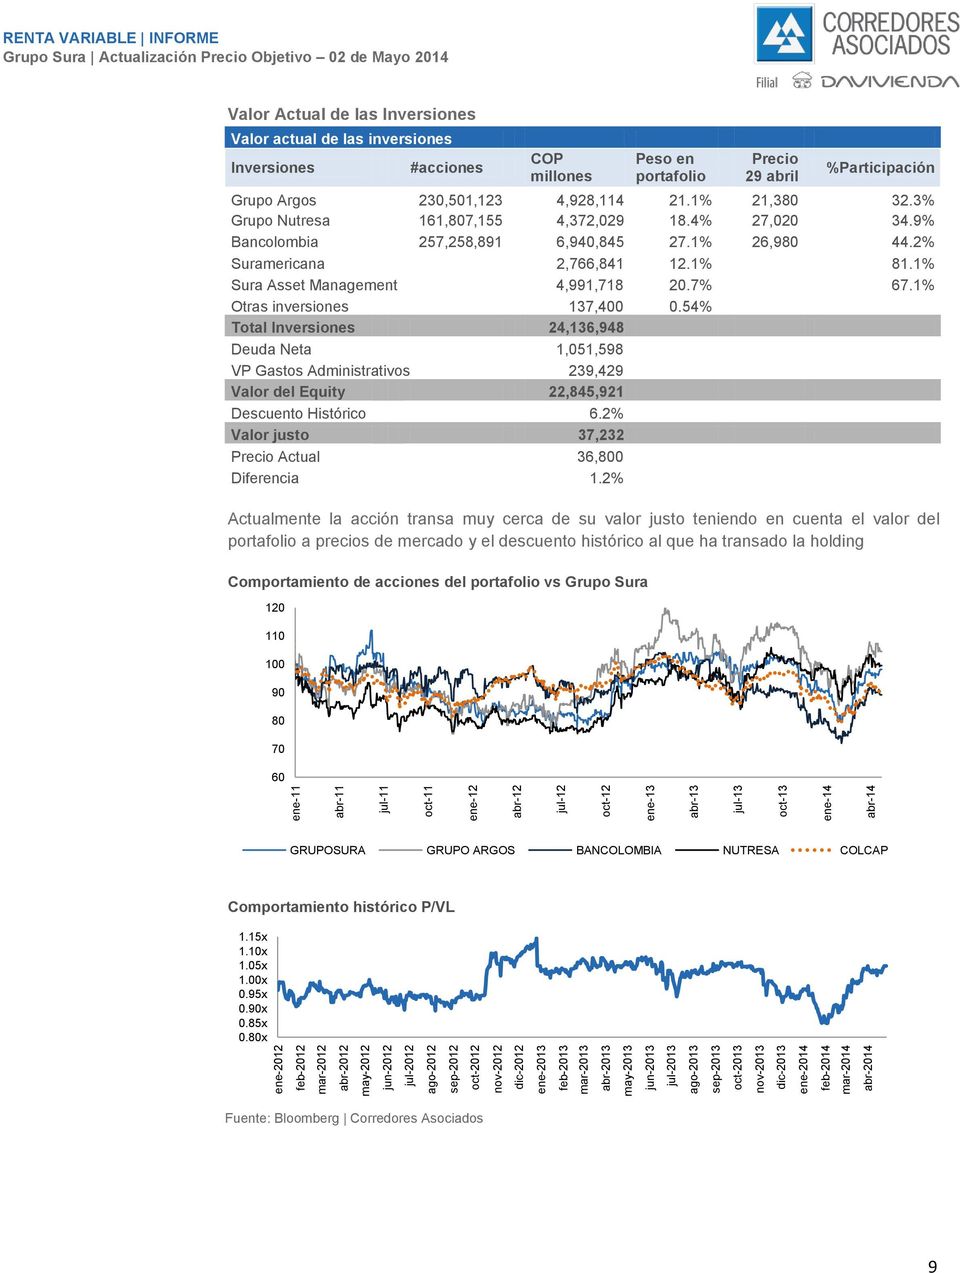 Inversiones Valor actual de las inversiones Inversiones #acciones COP millones Peso en portafolio Precio 29 abril %Participación Grupo Argos 230,501,123 4,928,114 21.1% 21,380 32.